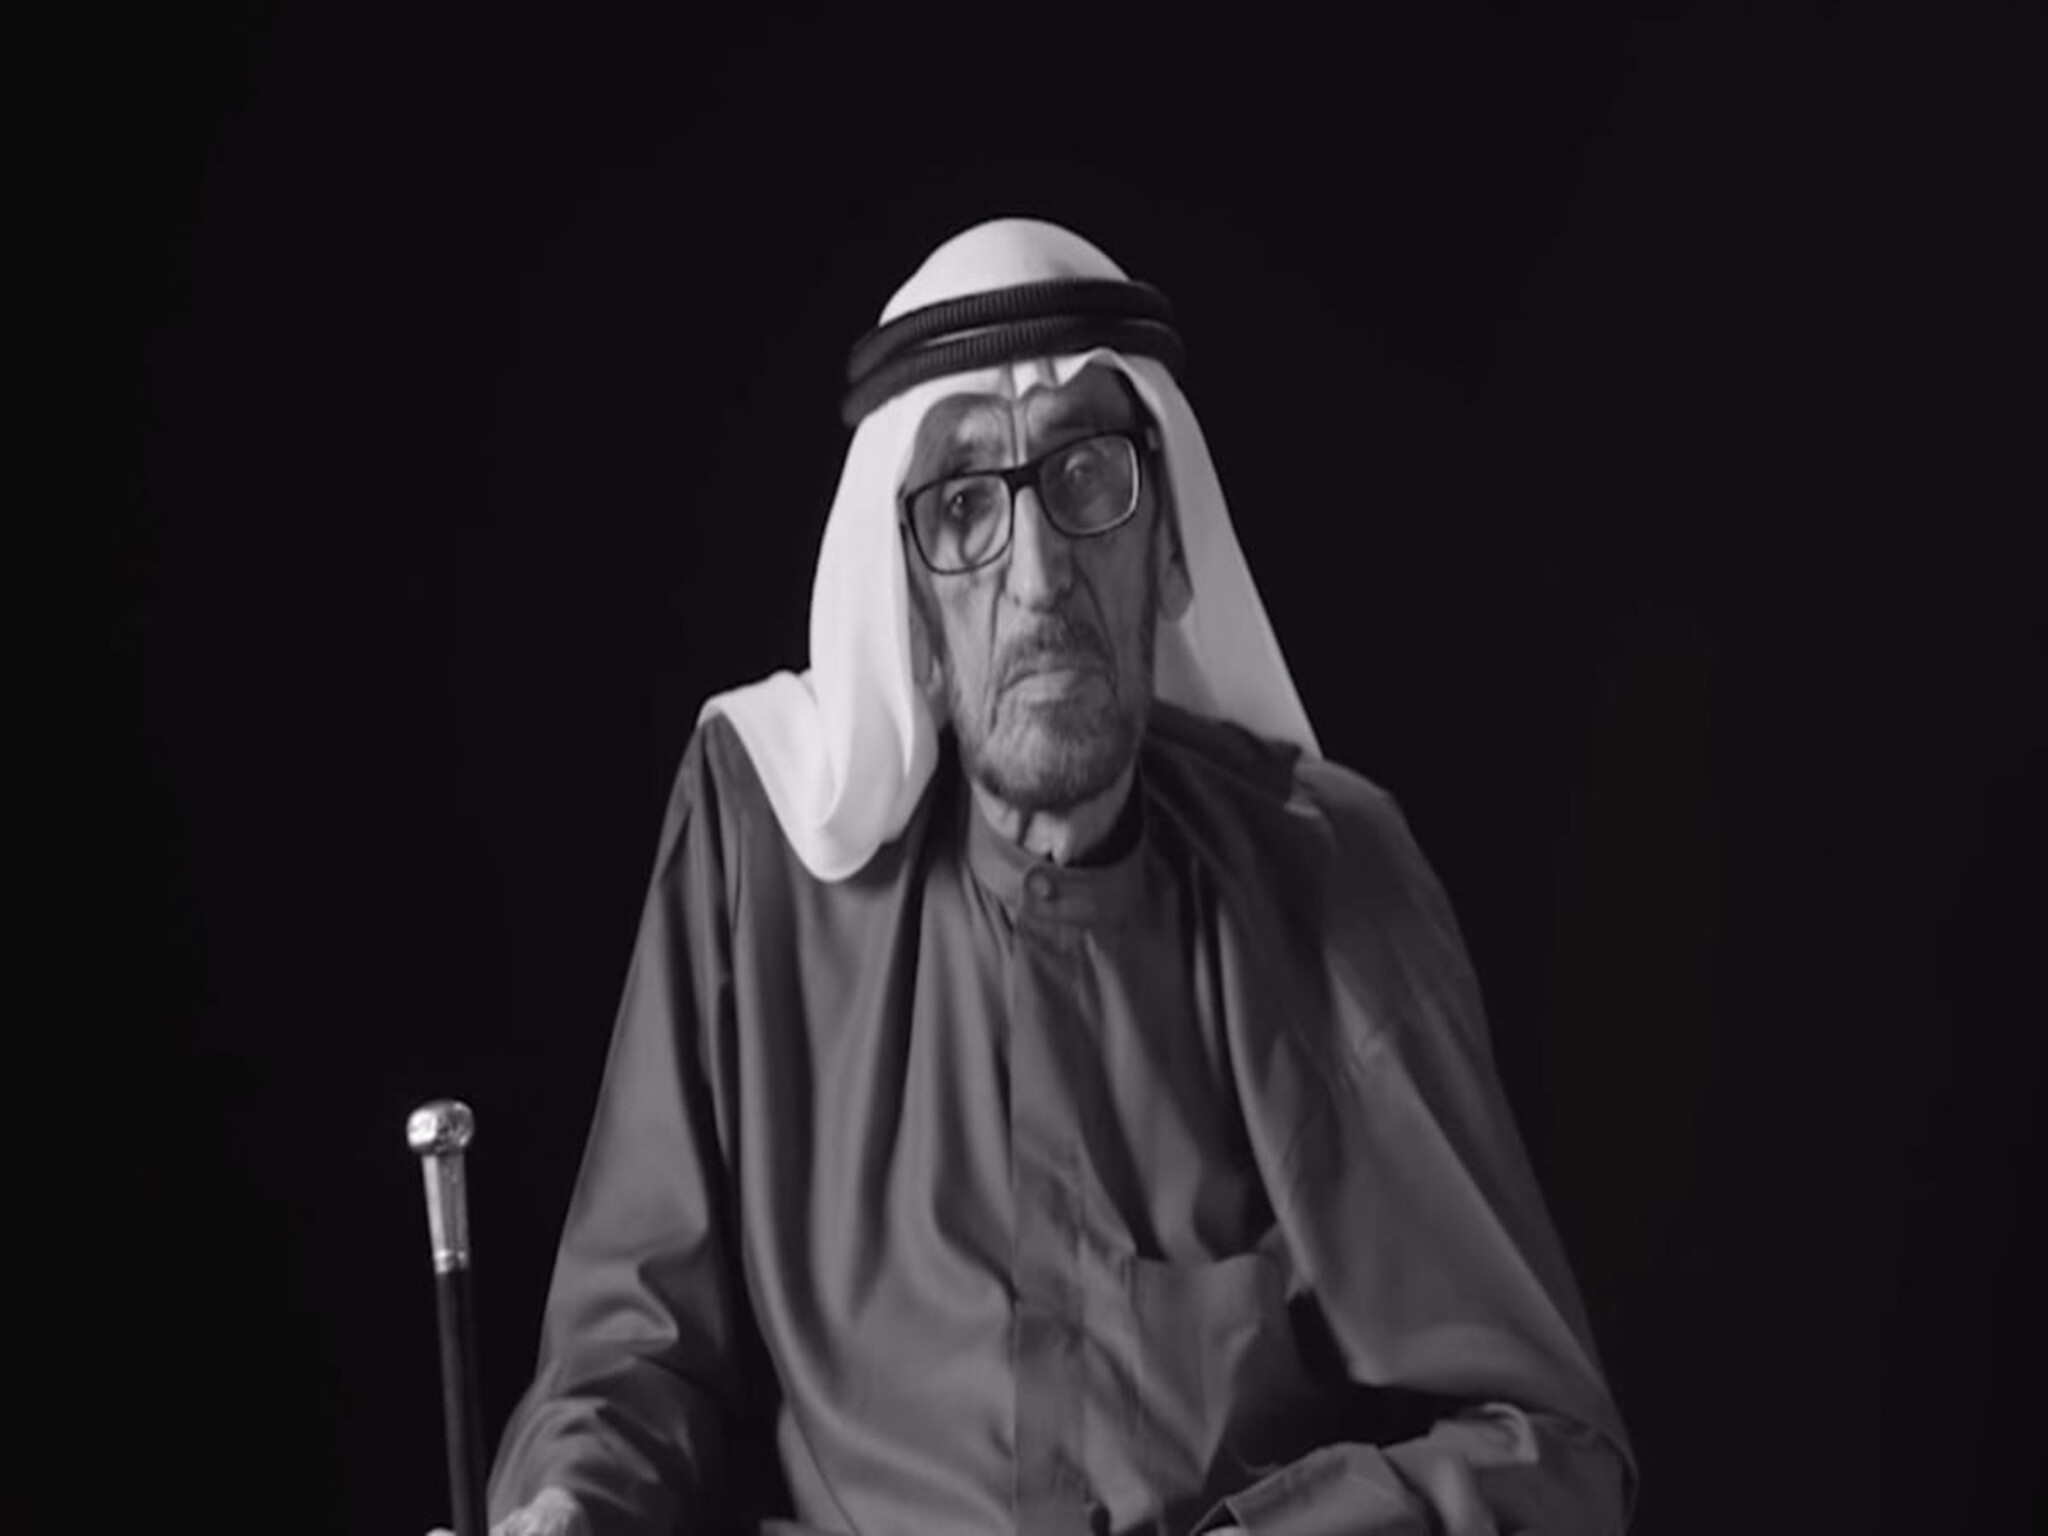 وفاة الشاعر الإماراتي "سعيد بن أحمد العتيبة" عن عمر يناهز 108 عامً